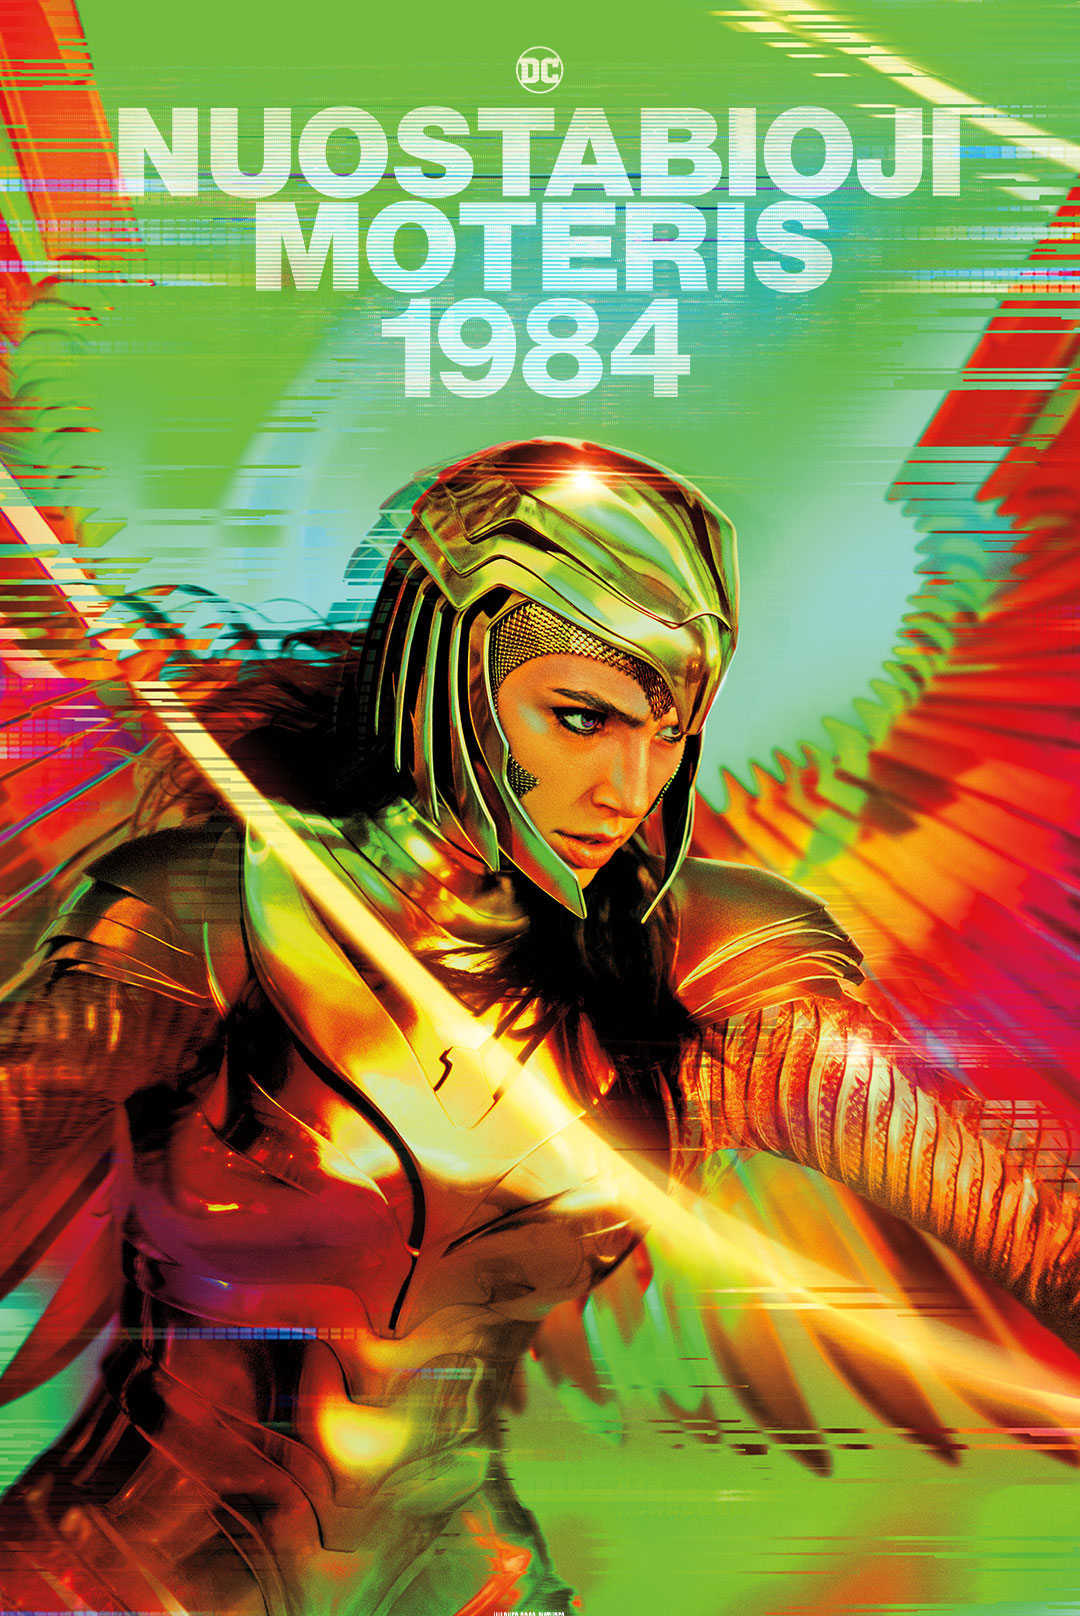 NUOSTABIOJI MOTERIS 1984 (Wonder Woman 1984)